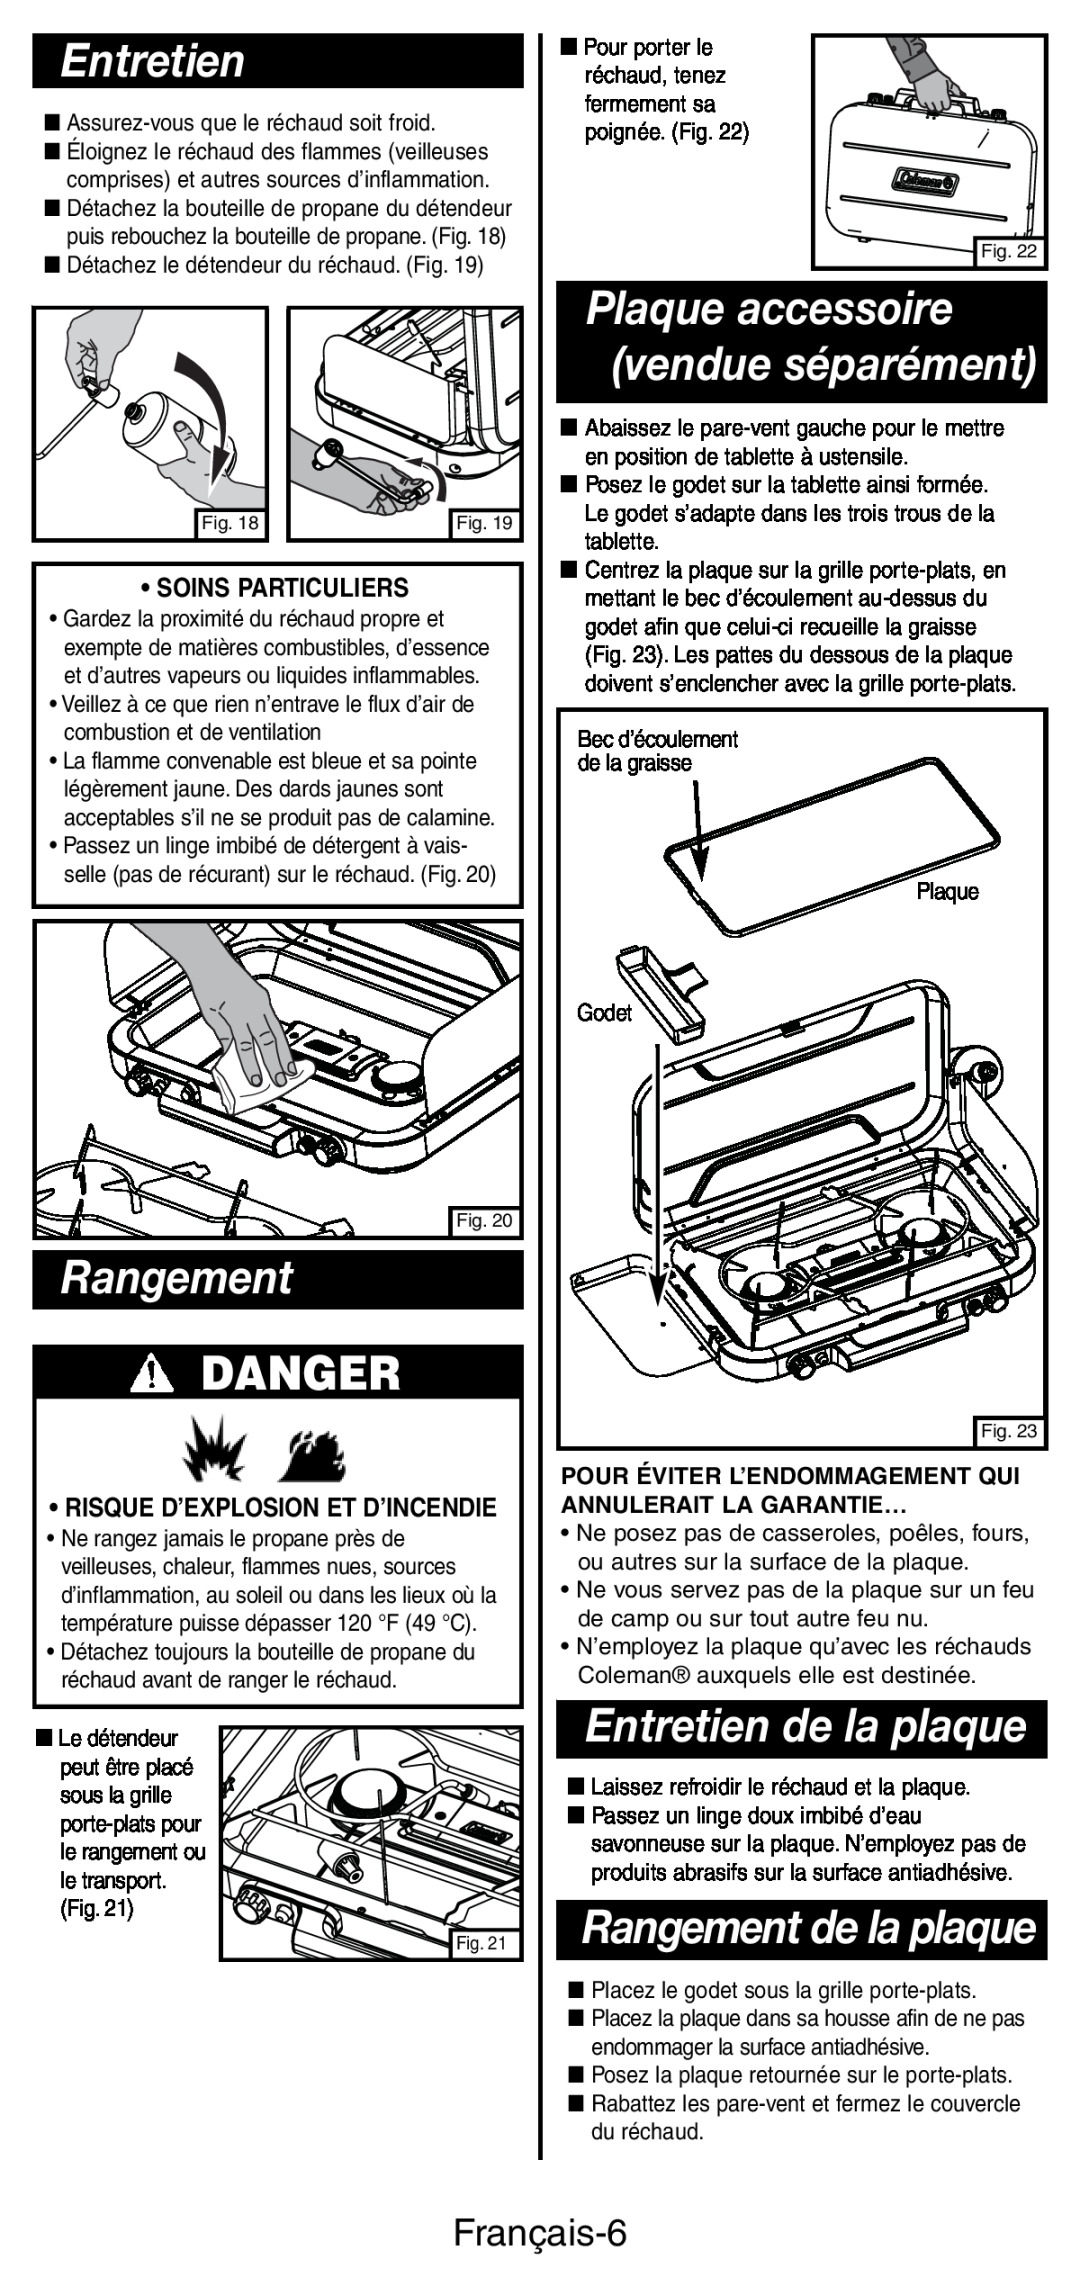 Coleman 5444 Series manual Plaque accessoire, vendue séparément, Rangement, Entretien de la plaque, Danger, Français-6 